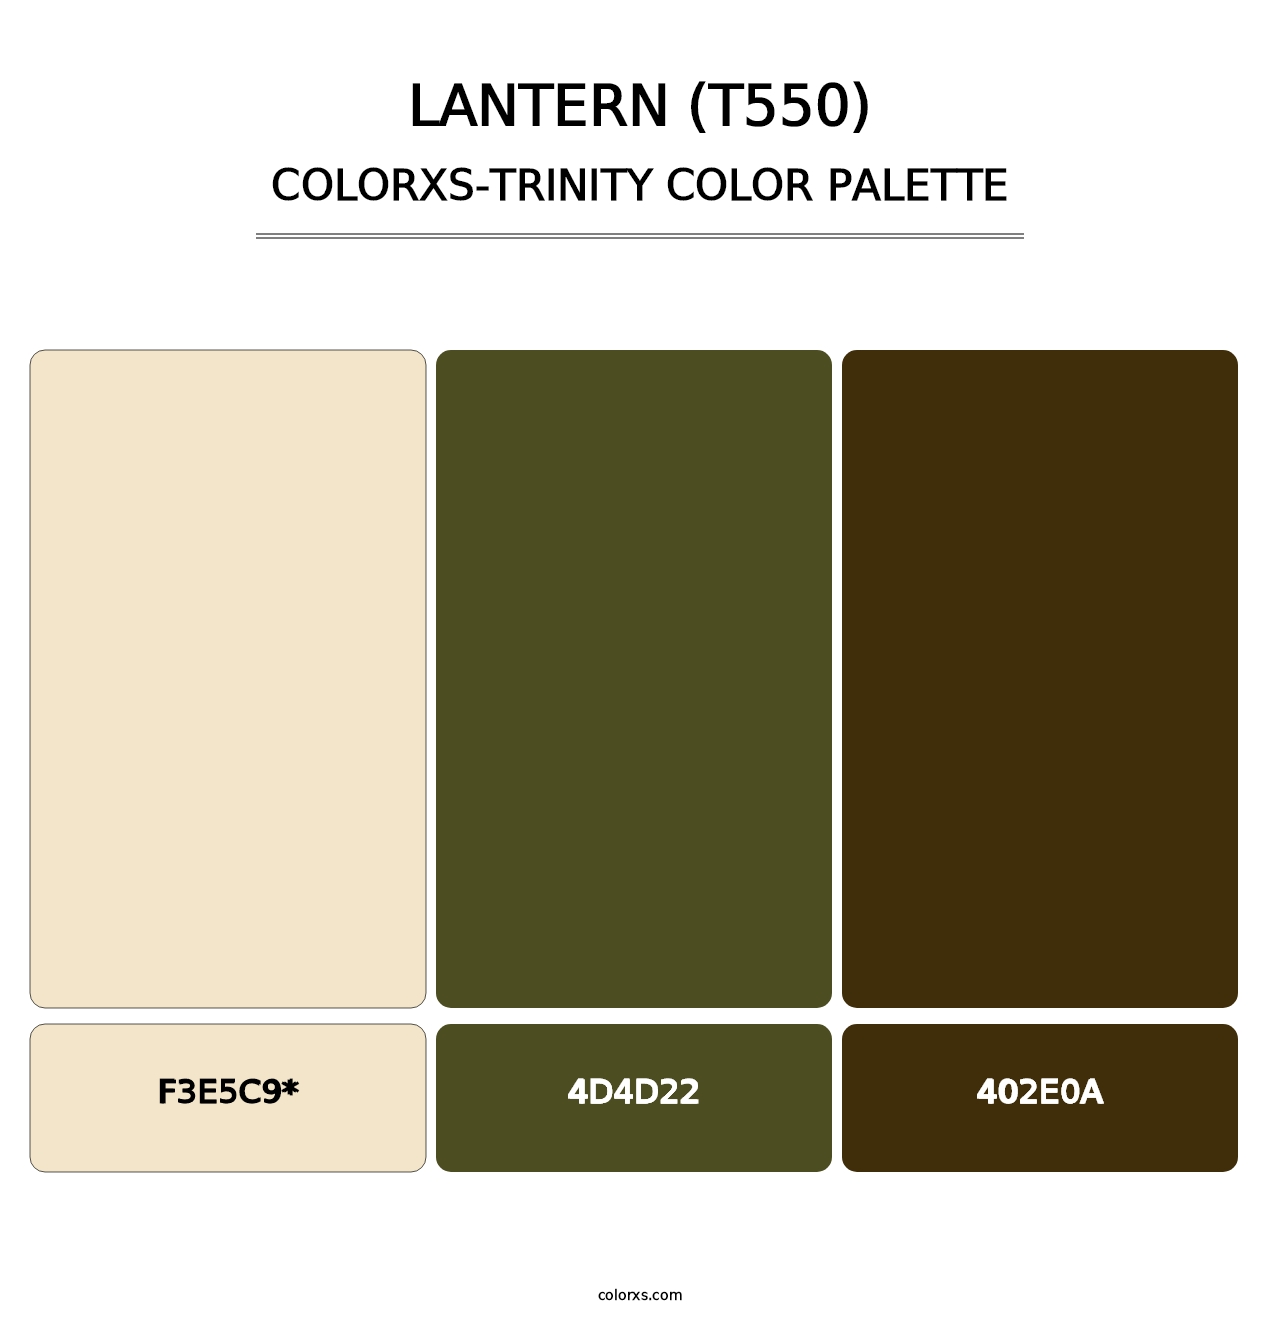 Lantern (T550) - Colorxs Trinity Palette